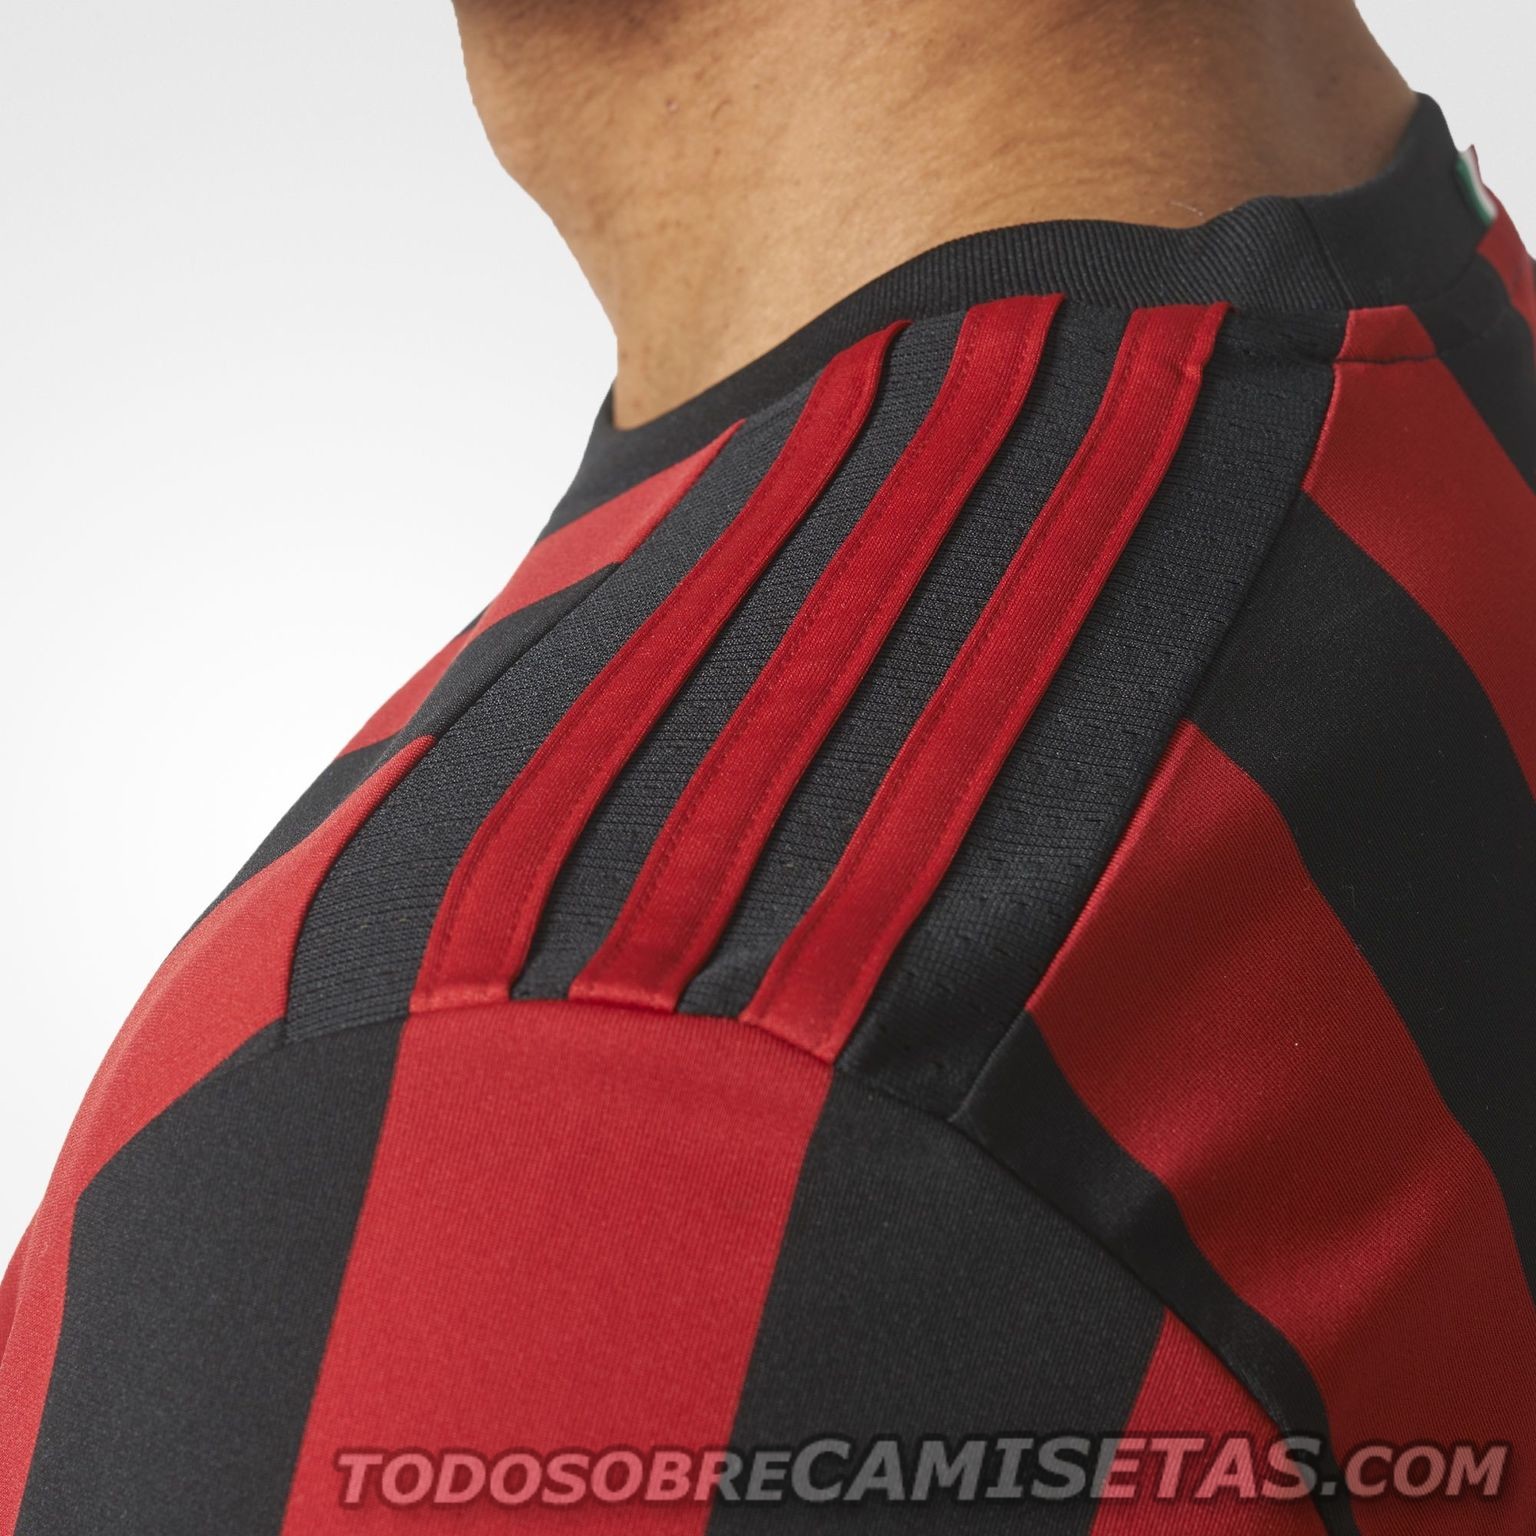 AC Milan 2017-18 adidas Home Kit